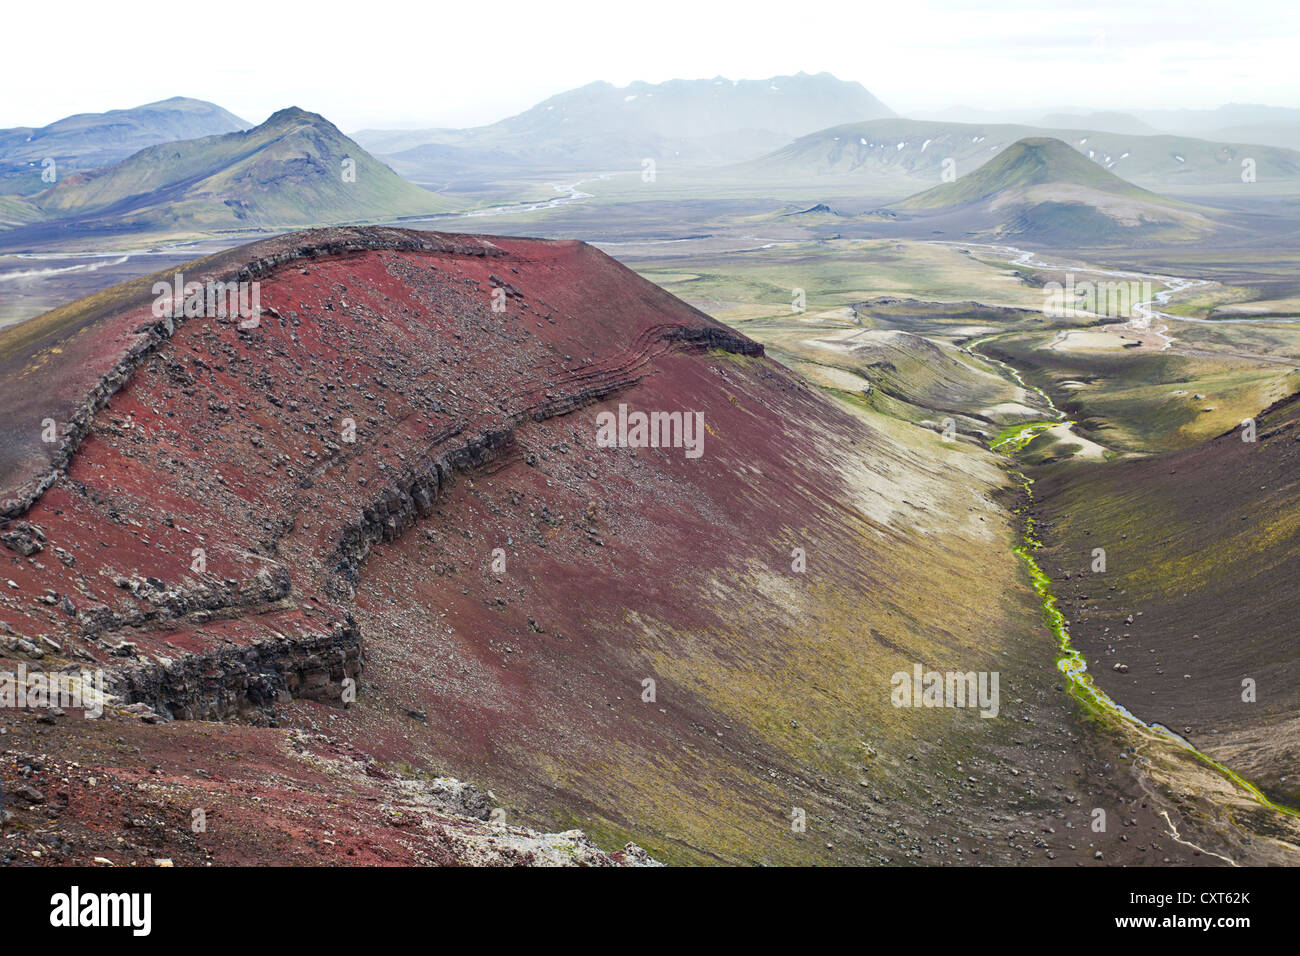 Ein roter Berg, bestehend aus Rhyolith Gesteine und Mineralien mit einem Eisengehalt, umgeben von Grün, mit Moos bedeckten Bergen Stockfoto